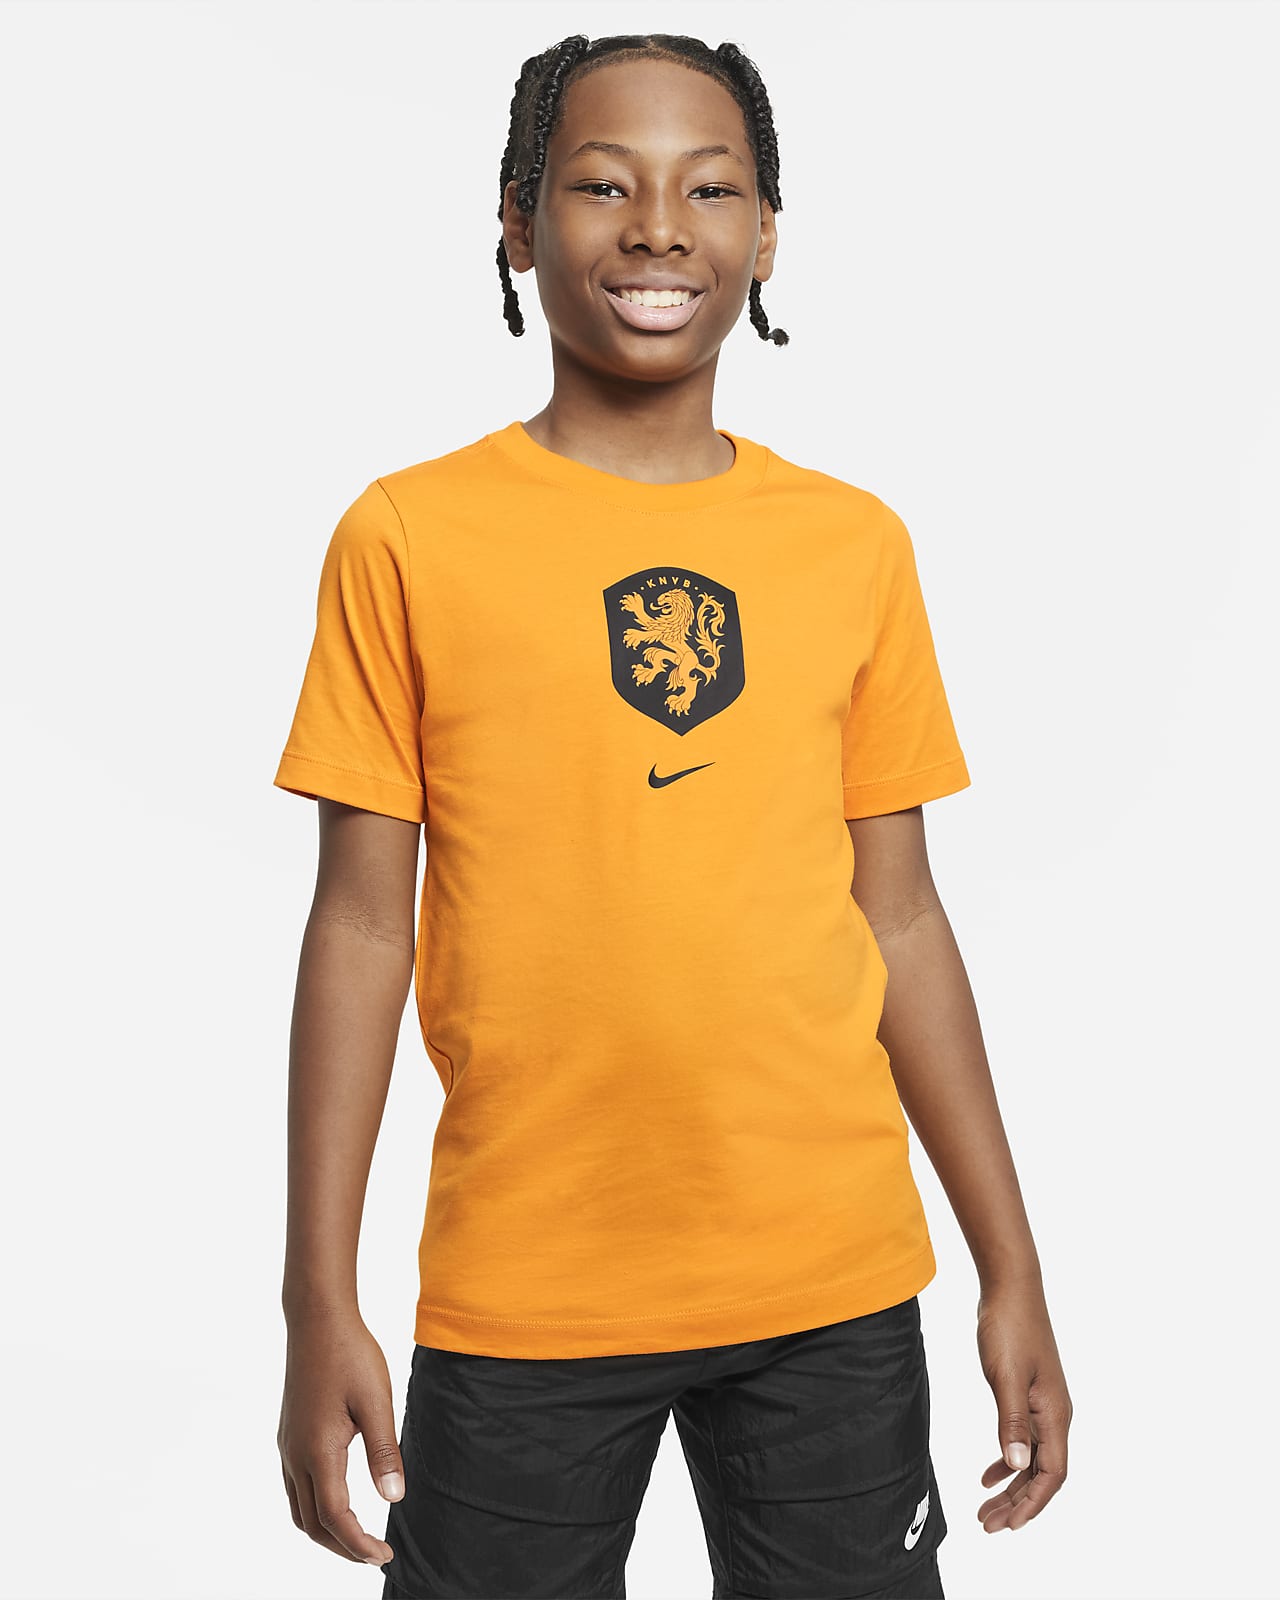 Netherlands Older Kids' Nike T-Shirt. LU